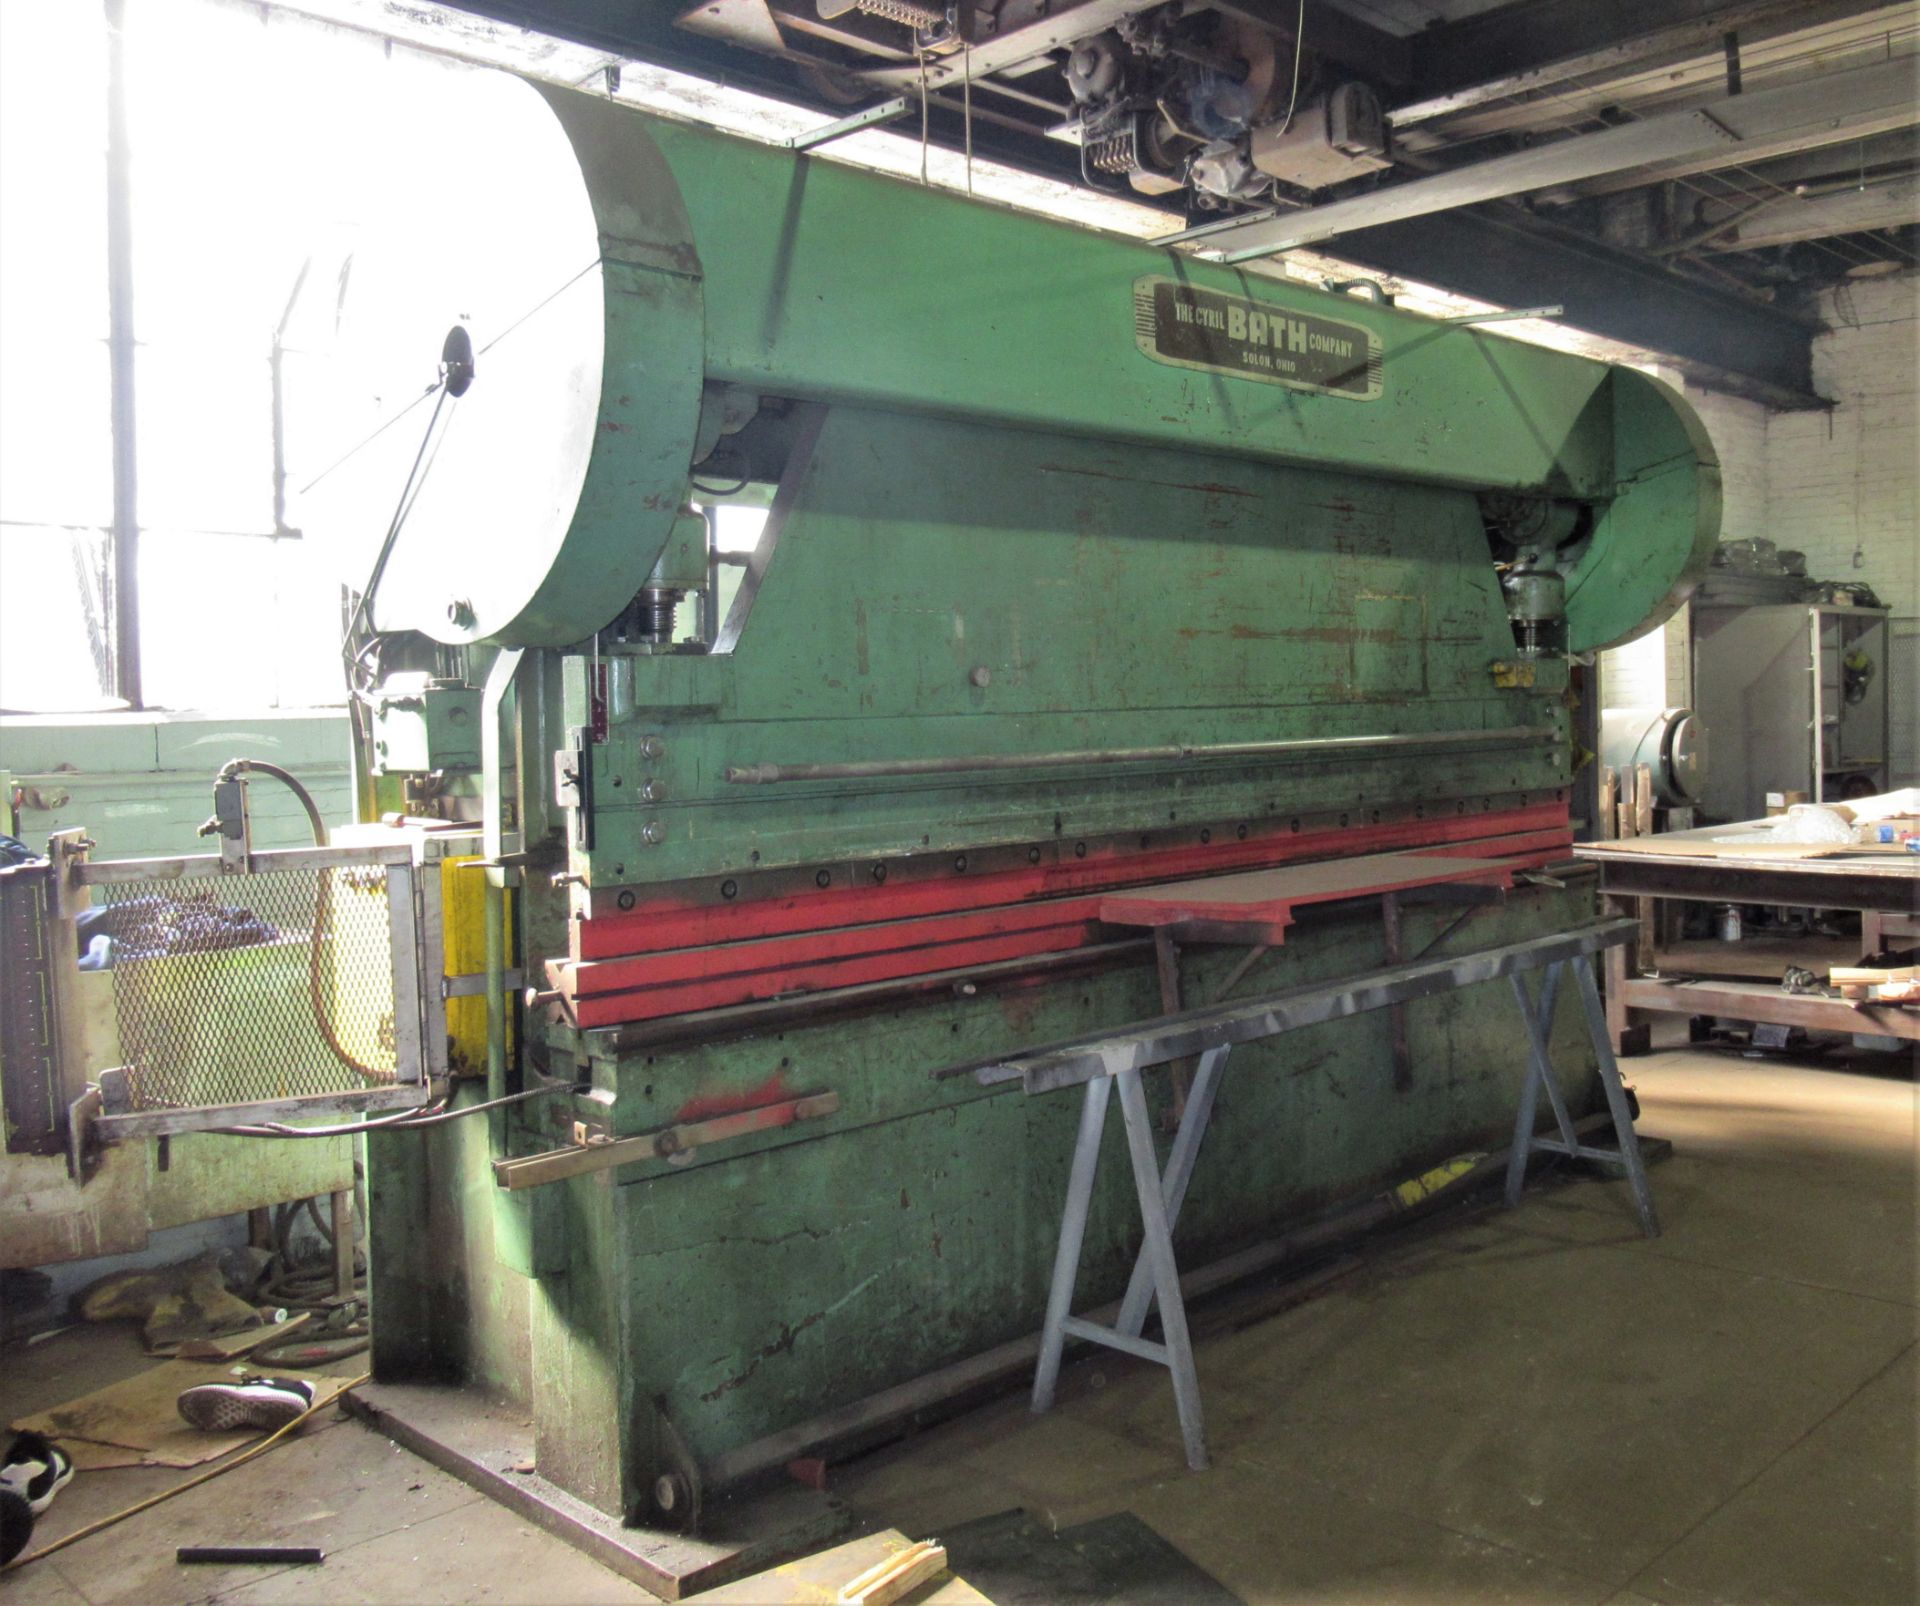 Cyril Bath Mdl. 150-10 12’ x 150 Ton Mechanical Press Brake